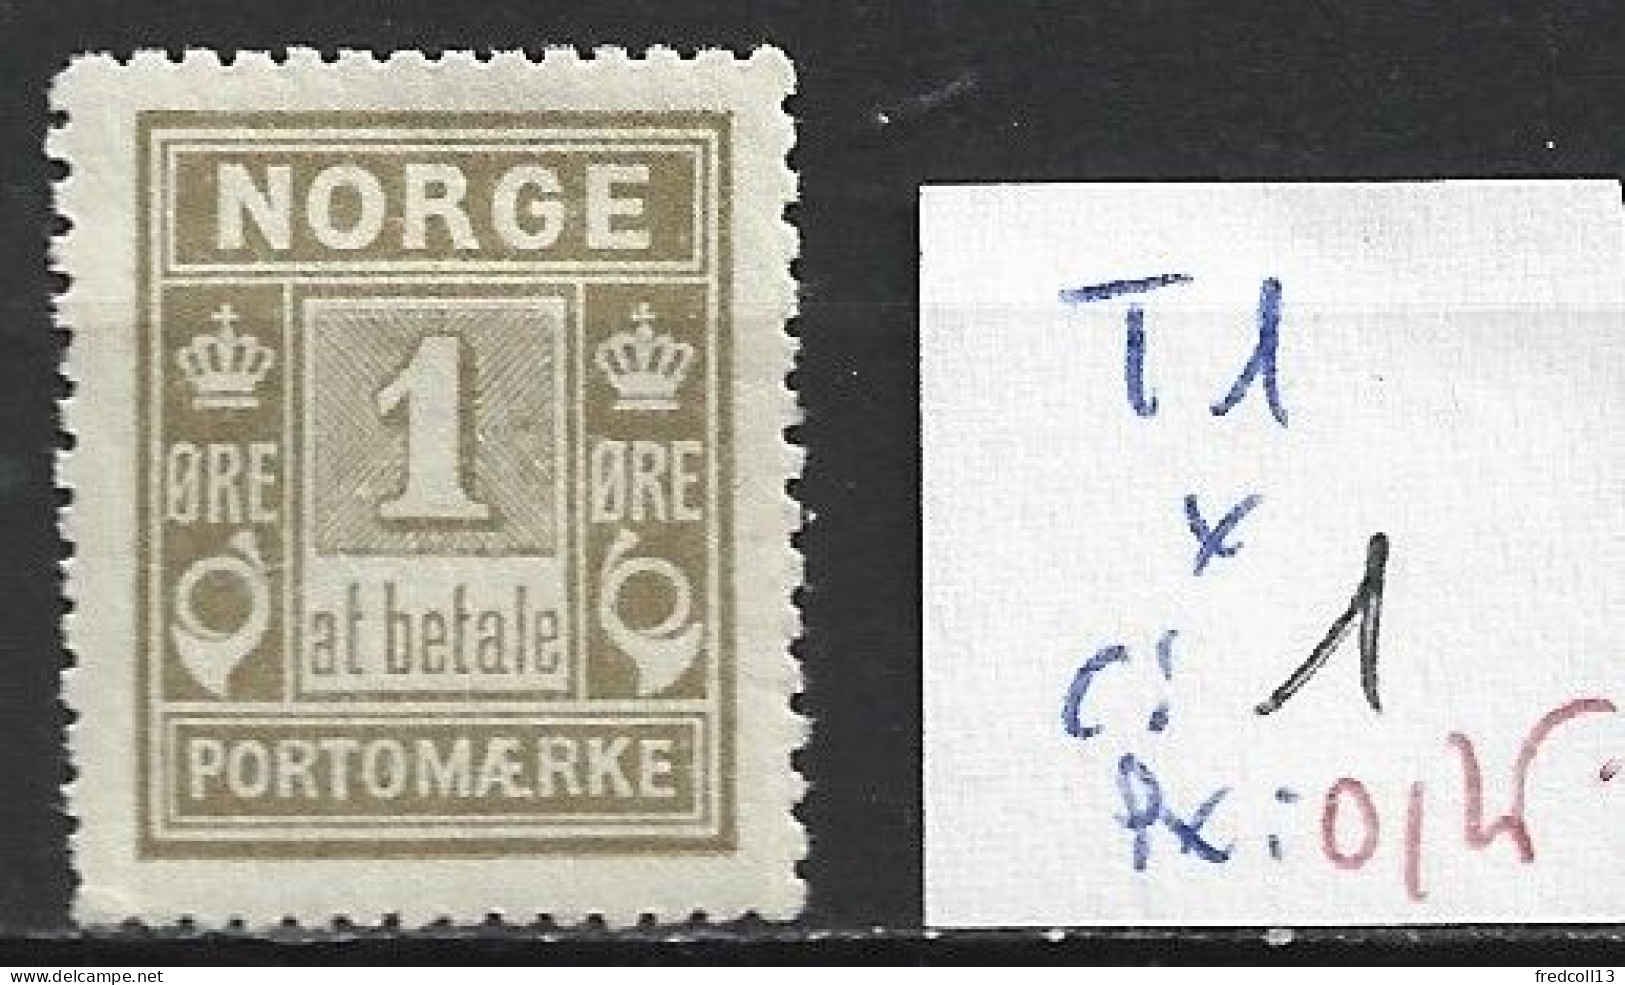 NORVEGE TAXE 1 * Côte 1 € - Unused Stamps